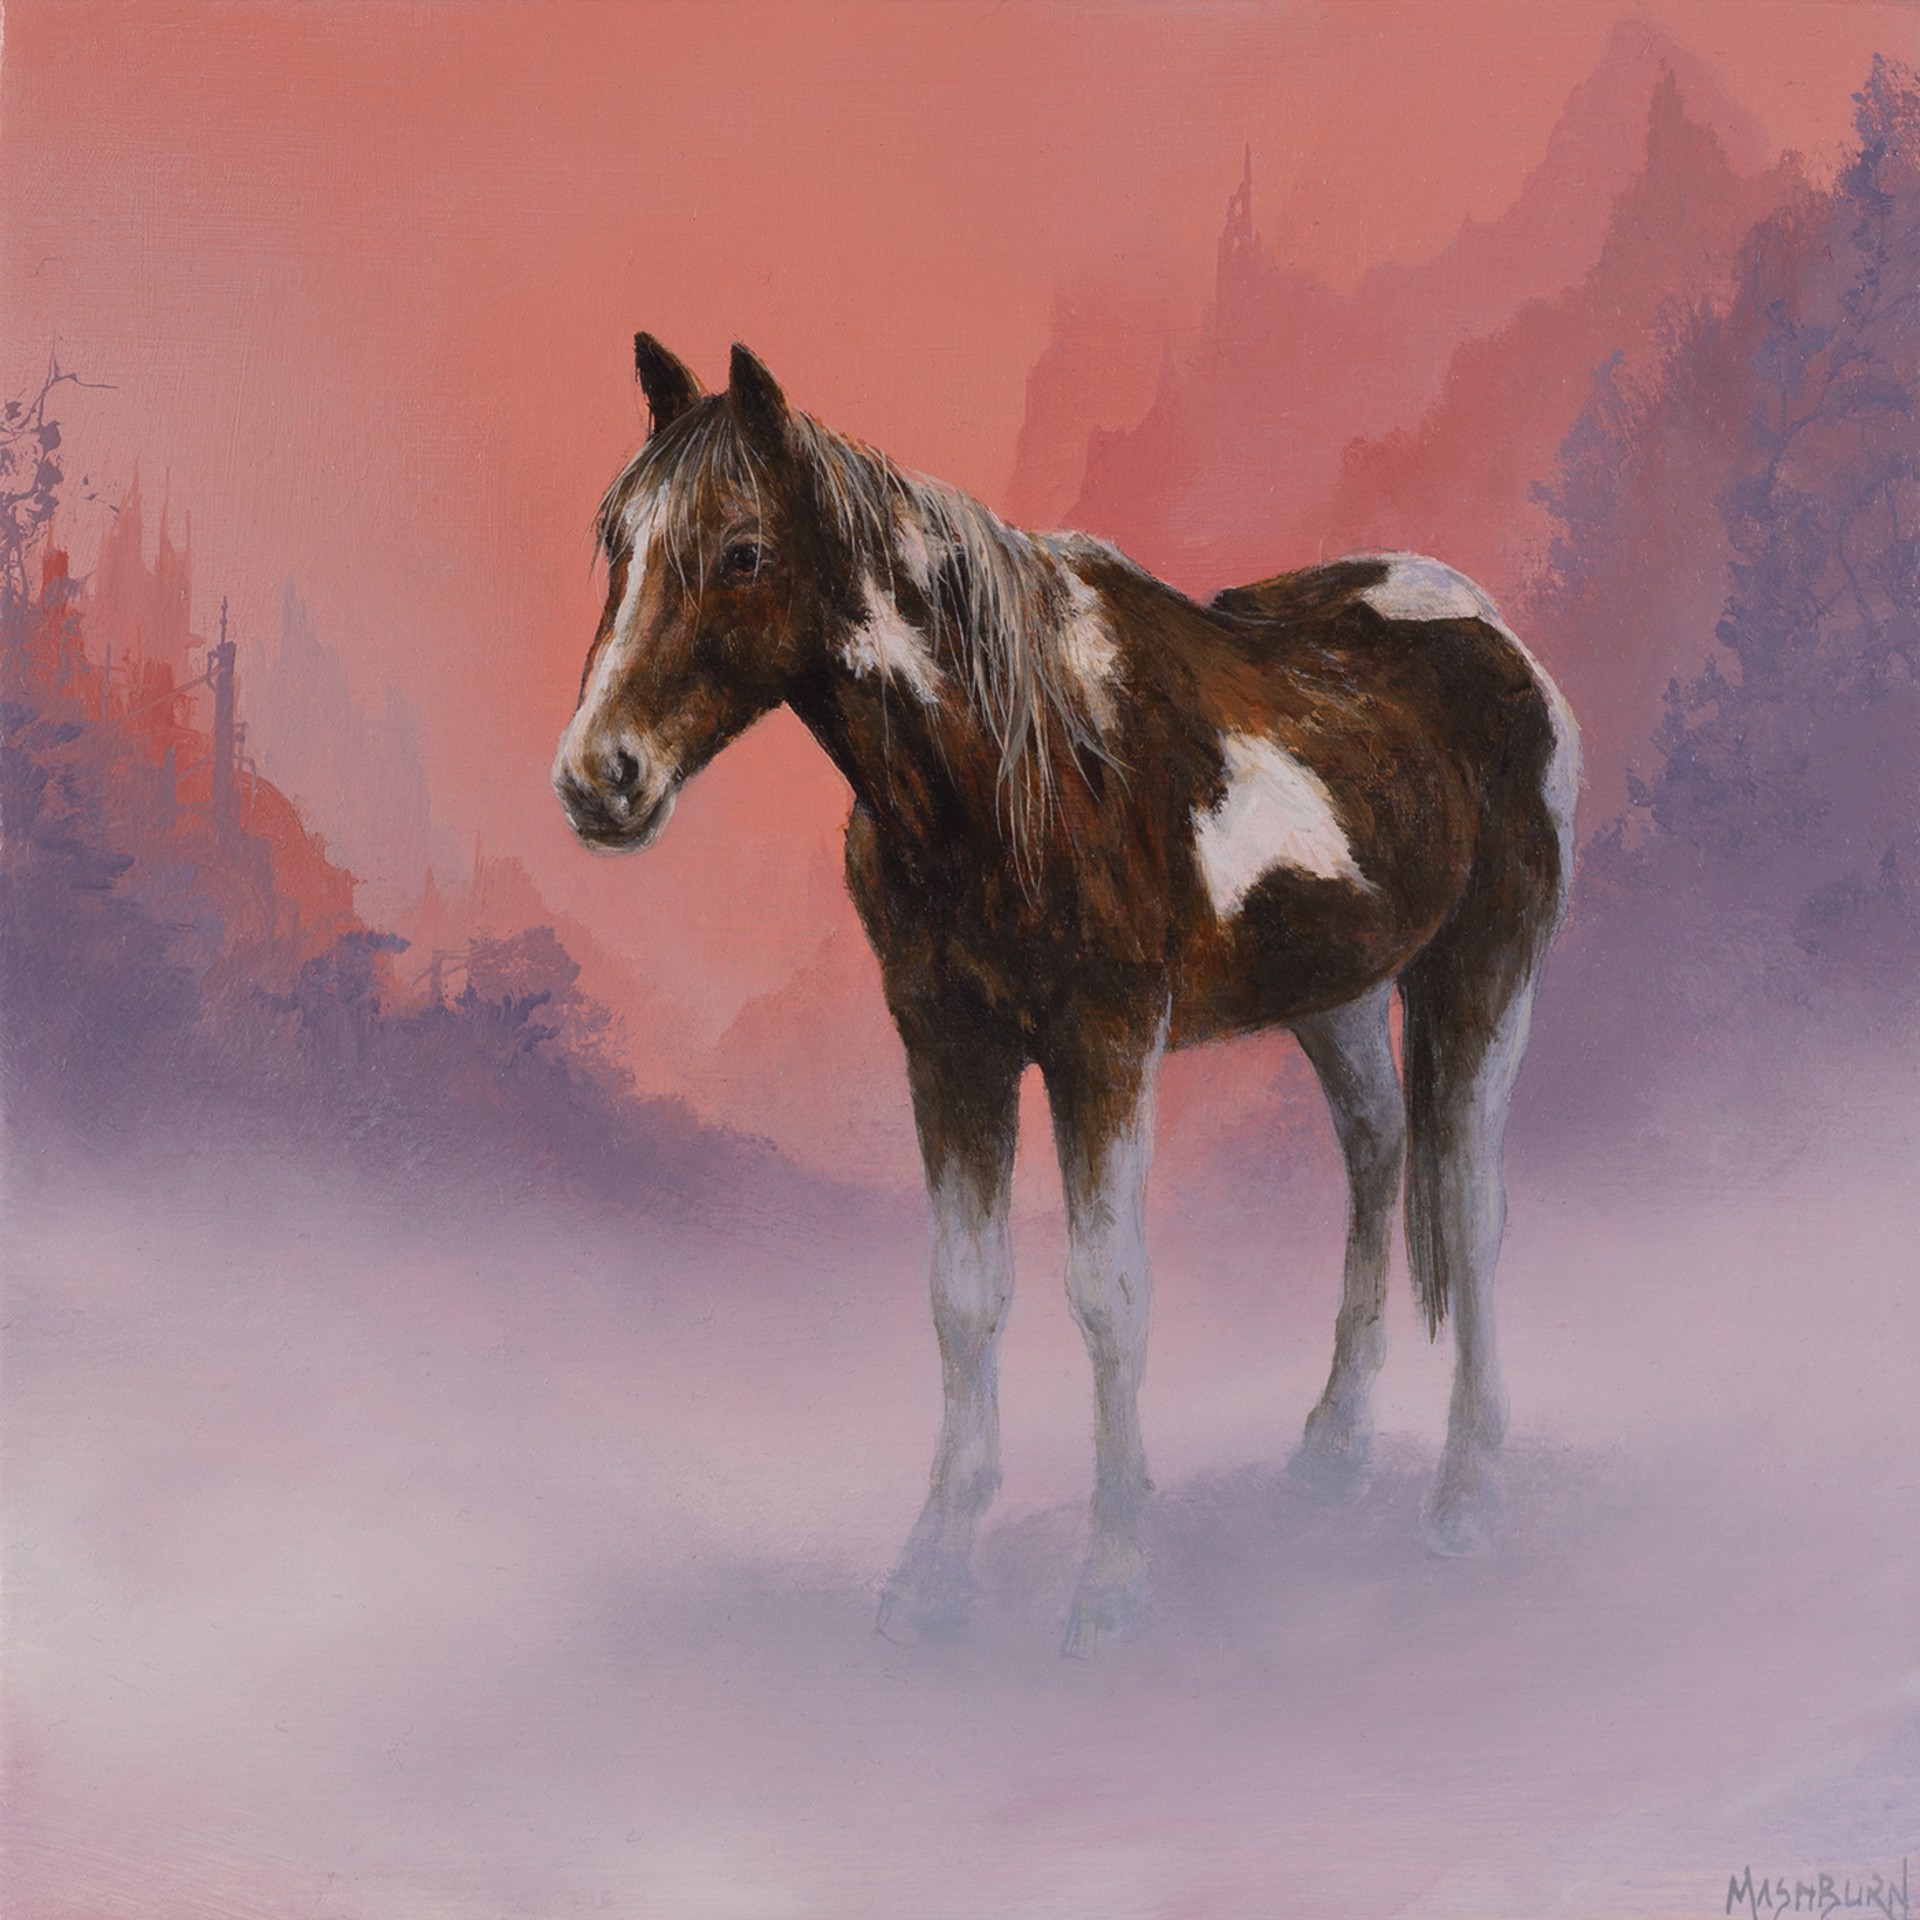 Horse in Fog by Brian Mashburn